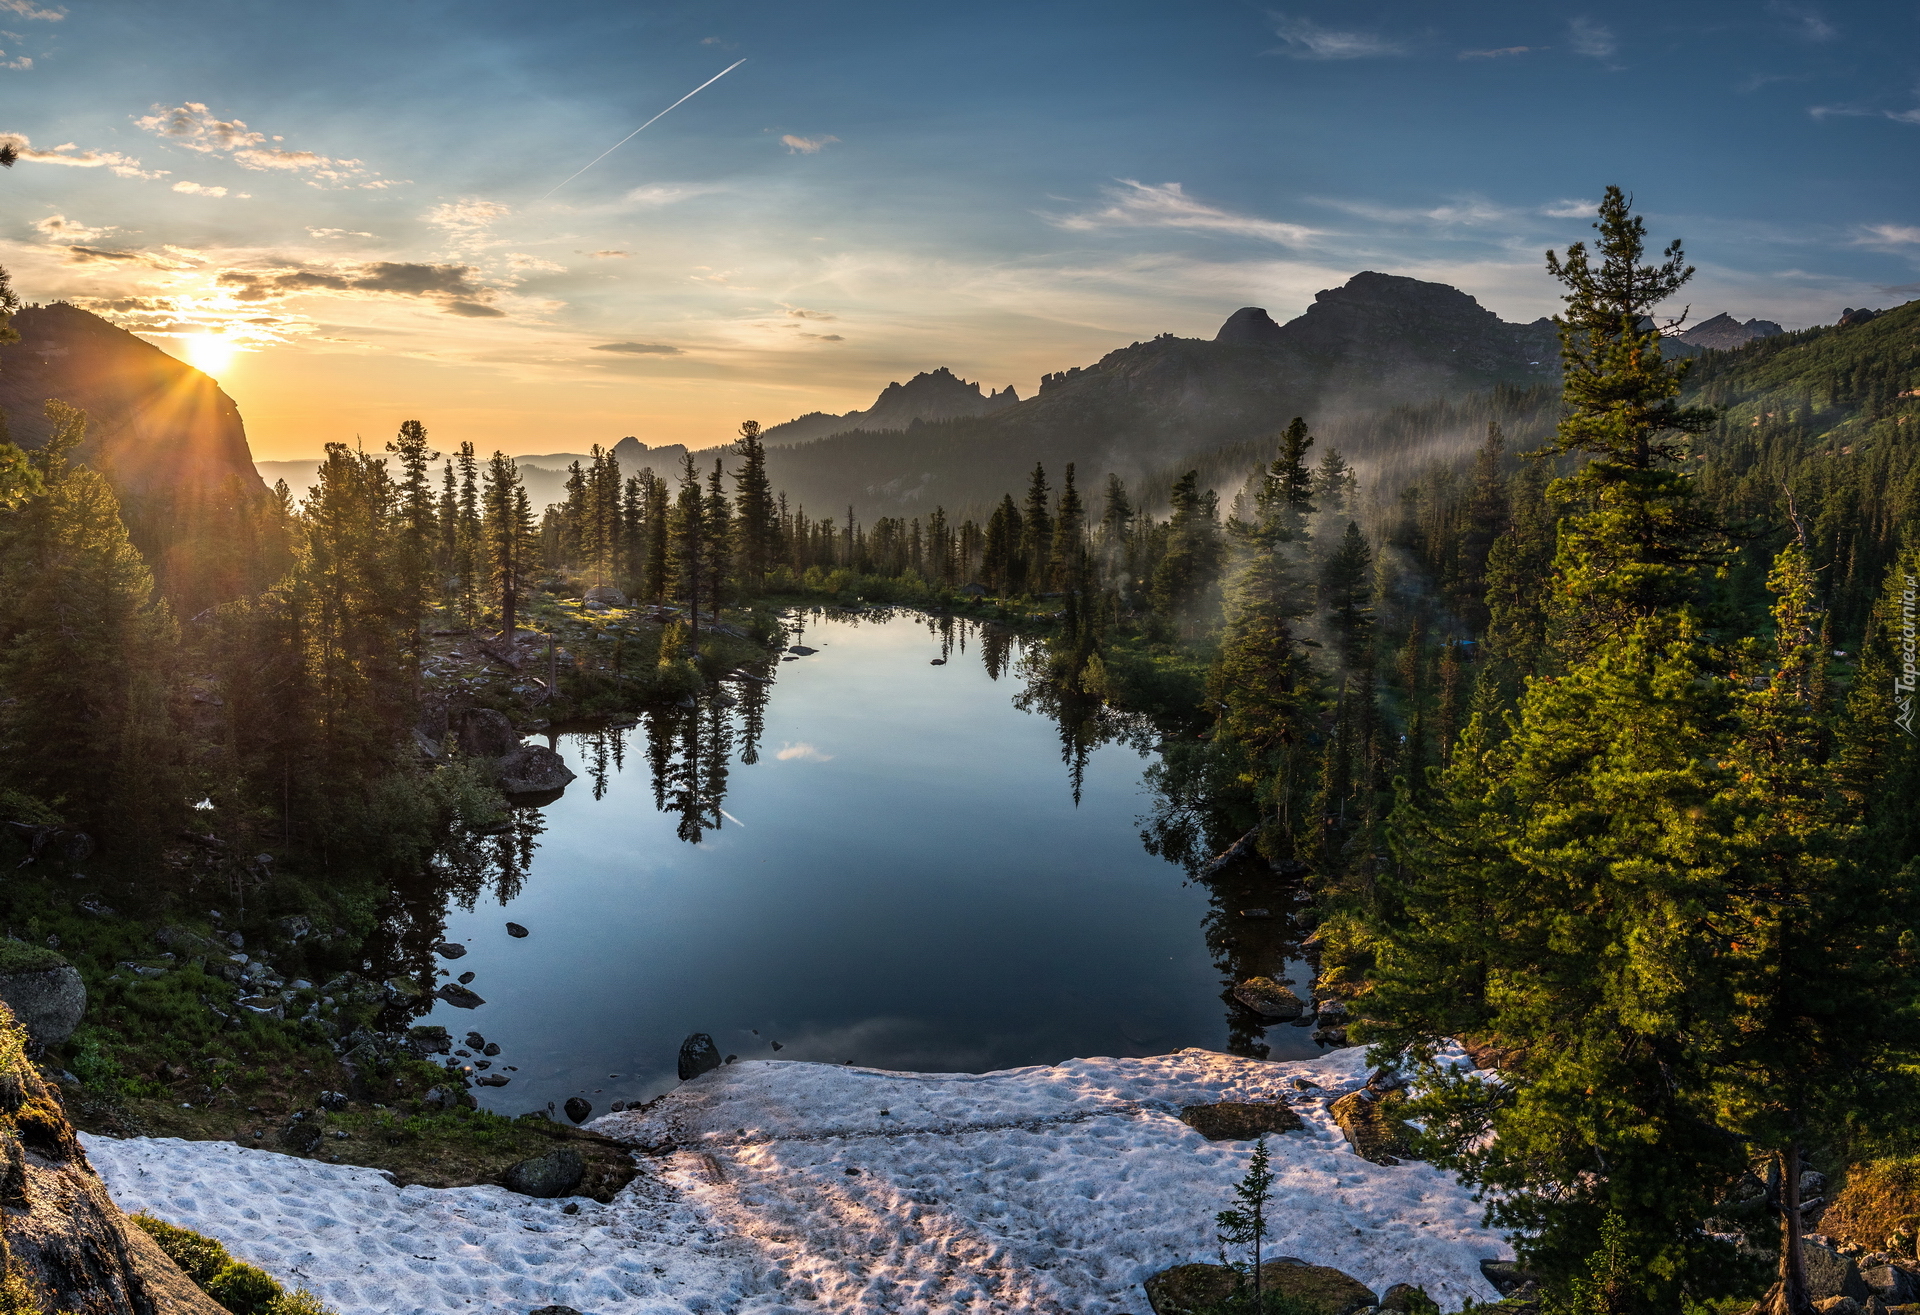 Jezioro Lazurnoye, Drzewa, Góry Ergaki, Pasmo Western Sayan, Zachód słońca, Park przyrody Ergaki, Syberia, Rosja